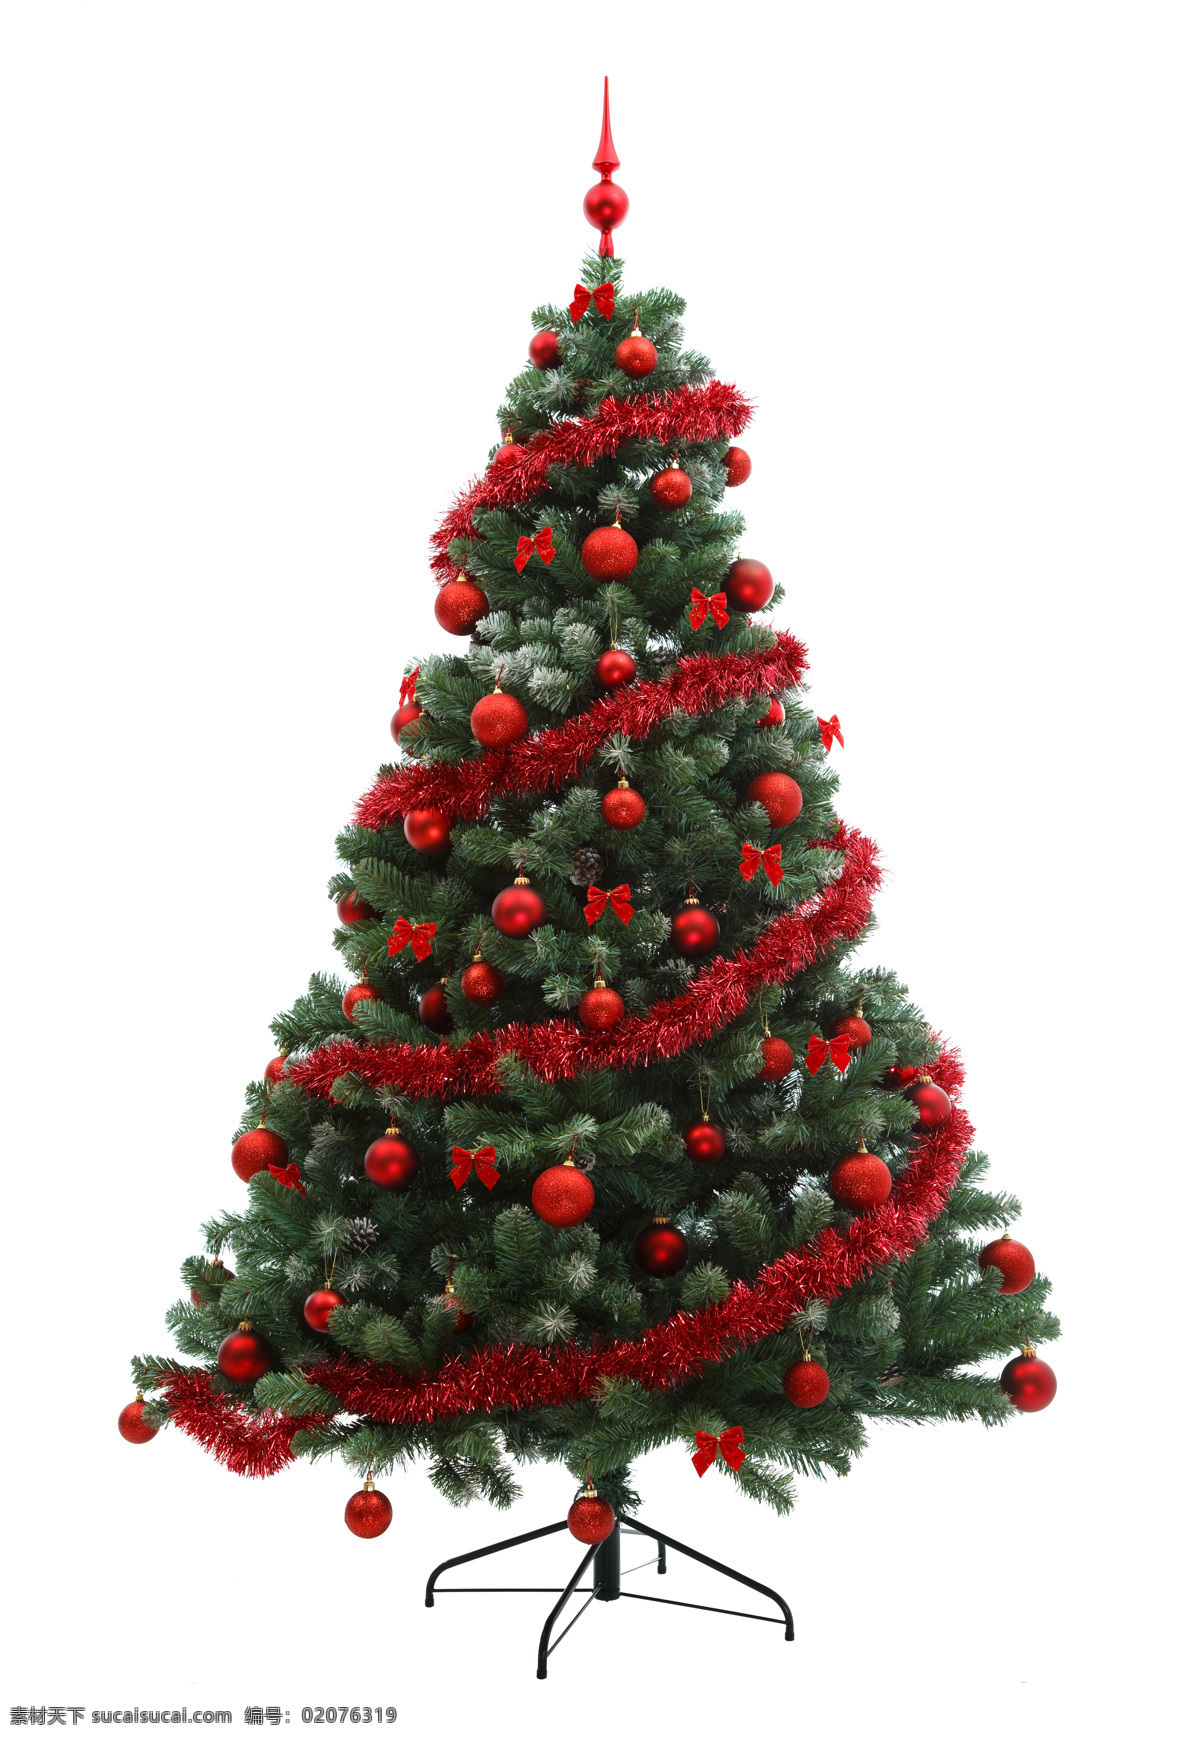 圣诞 树上 红色 装饰 圣诞树 圣诞球 圣诞节 节日背景 圣诞节装饰 节日庆典 生活百科